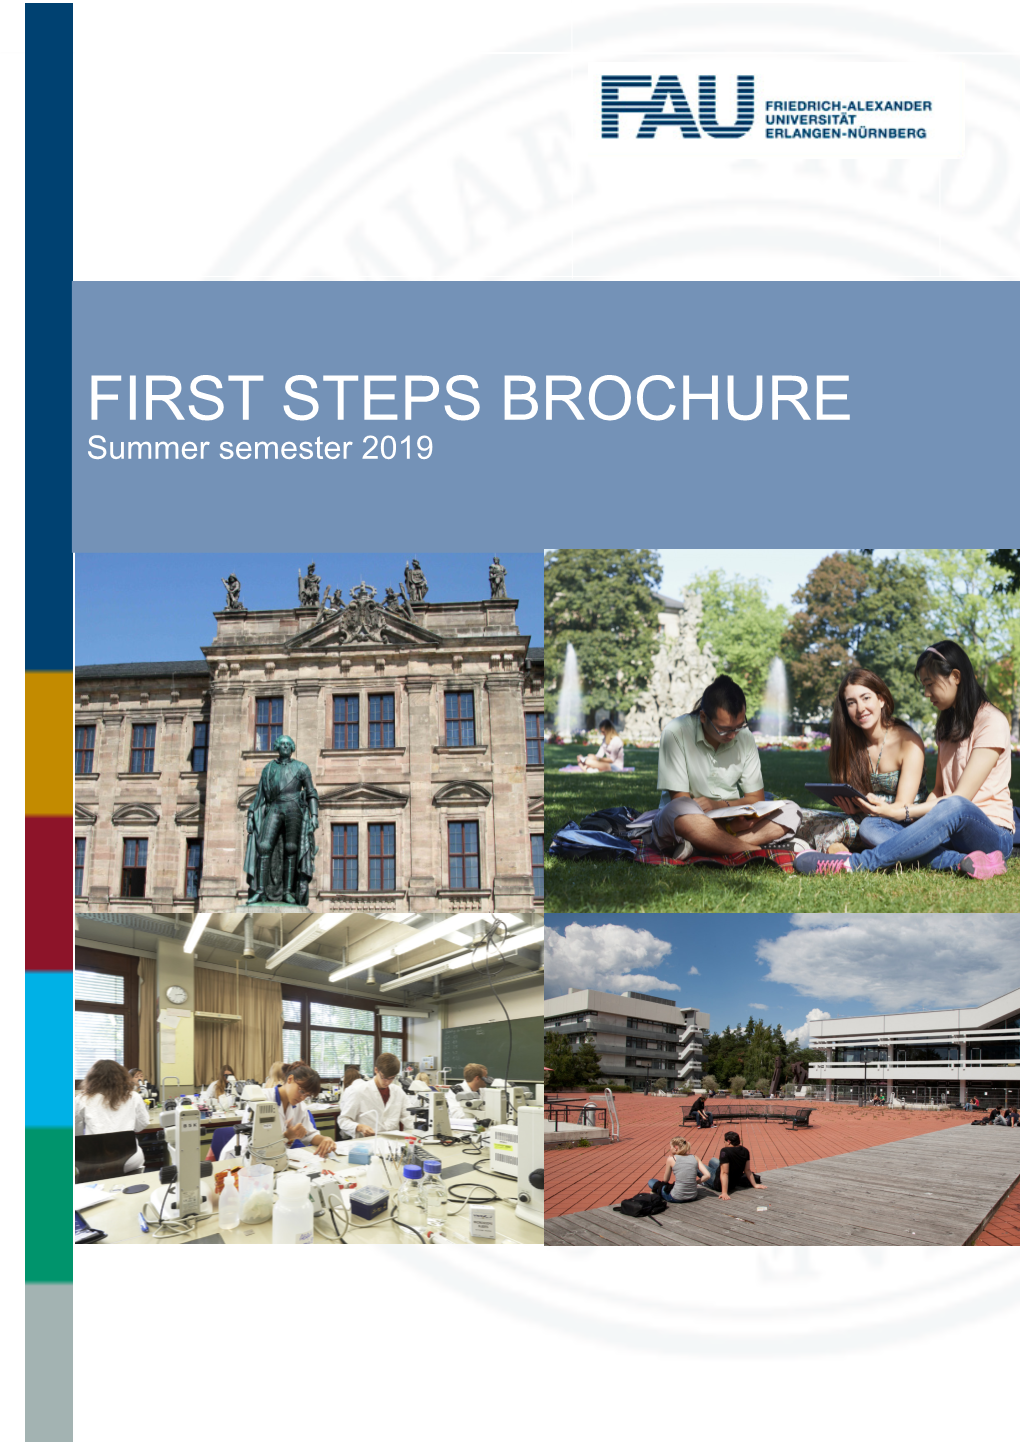 First Steps Brochure SS 2019